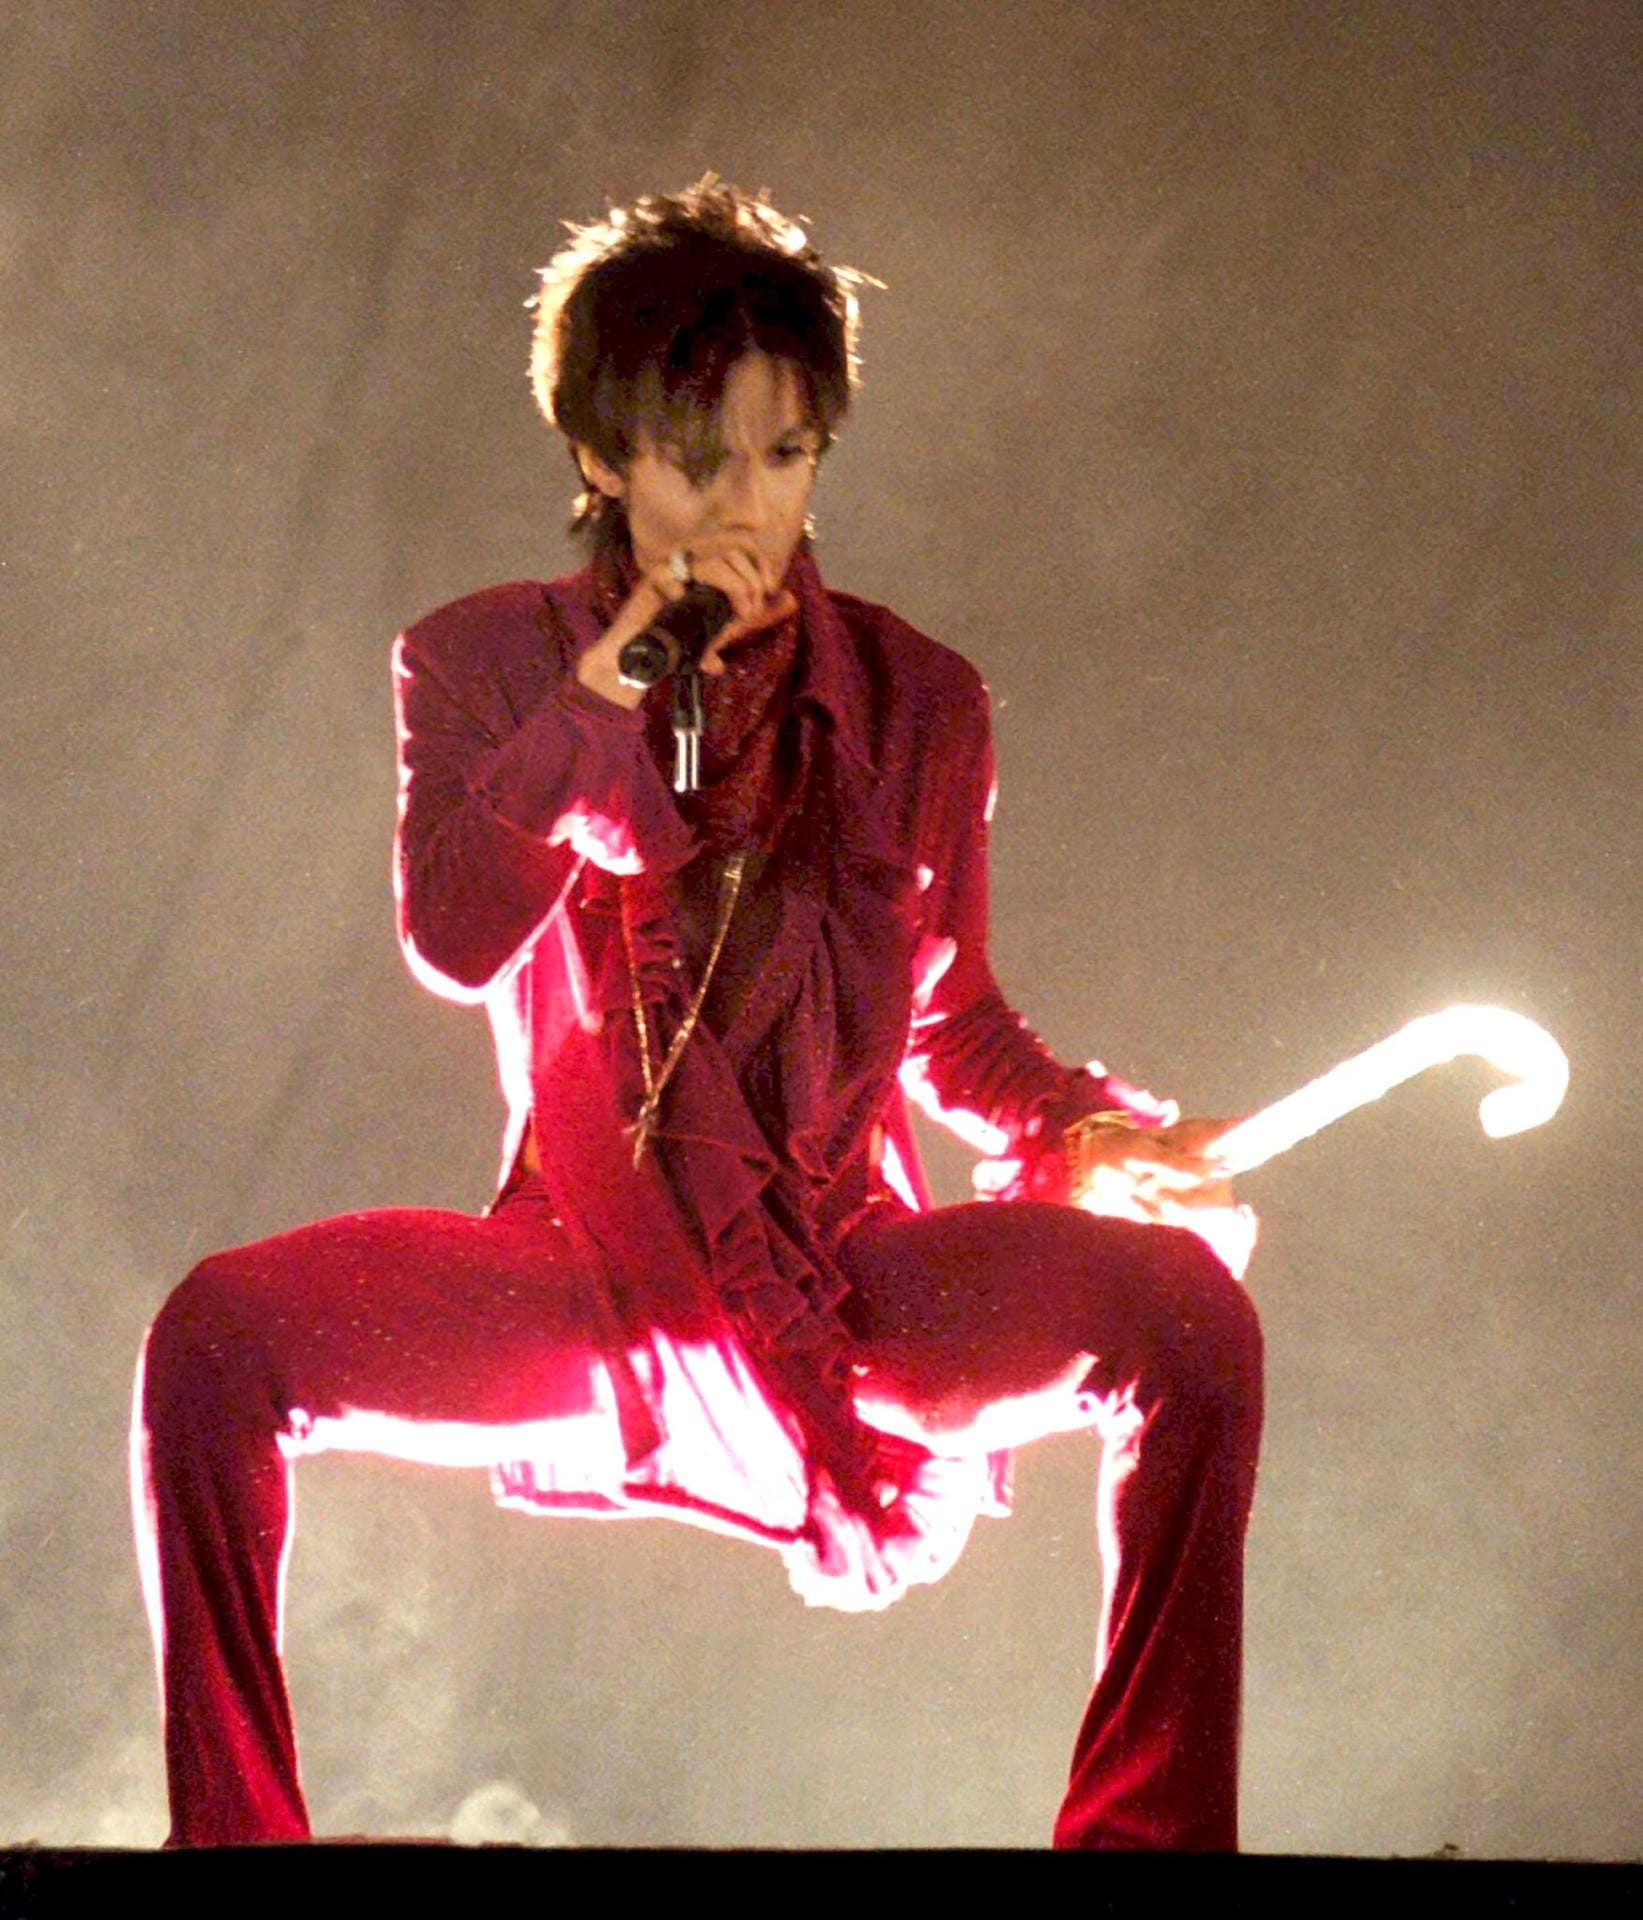 Auch seinen Künstlernamen änderte er 1993 in ein unaussprechliches Symbol, daraufhin wurde er zu "The Artist formerly known as Prince" (TAFKAP).